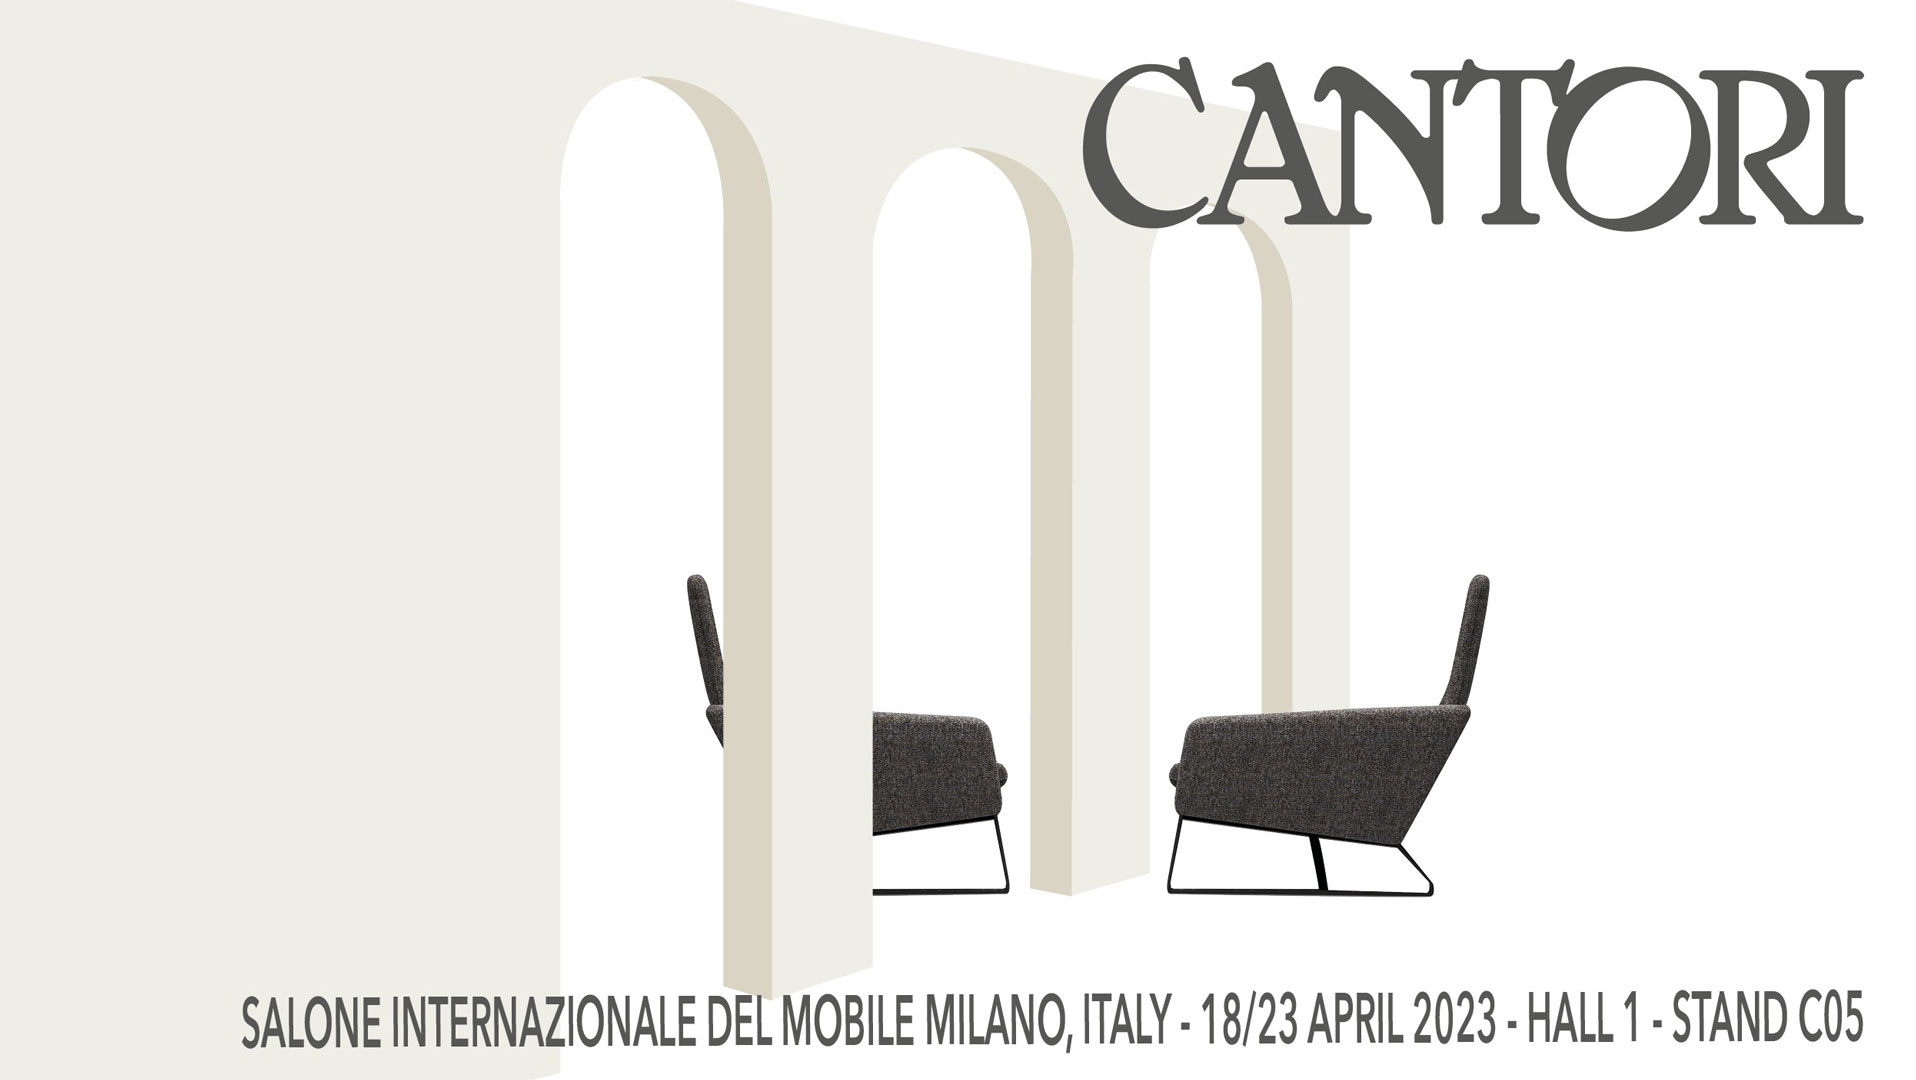 16/02/2023 Cantori al Salone del Mobile di Milano 2023 - Cantori